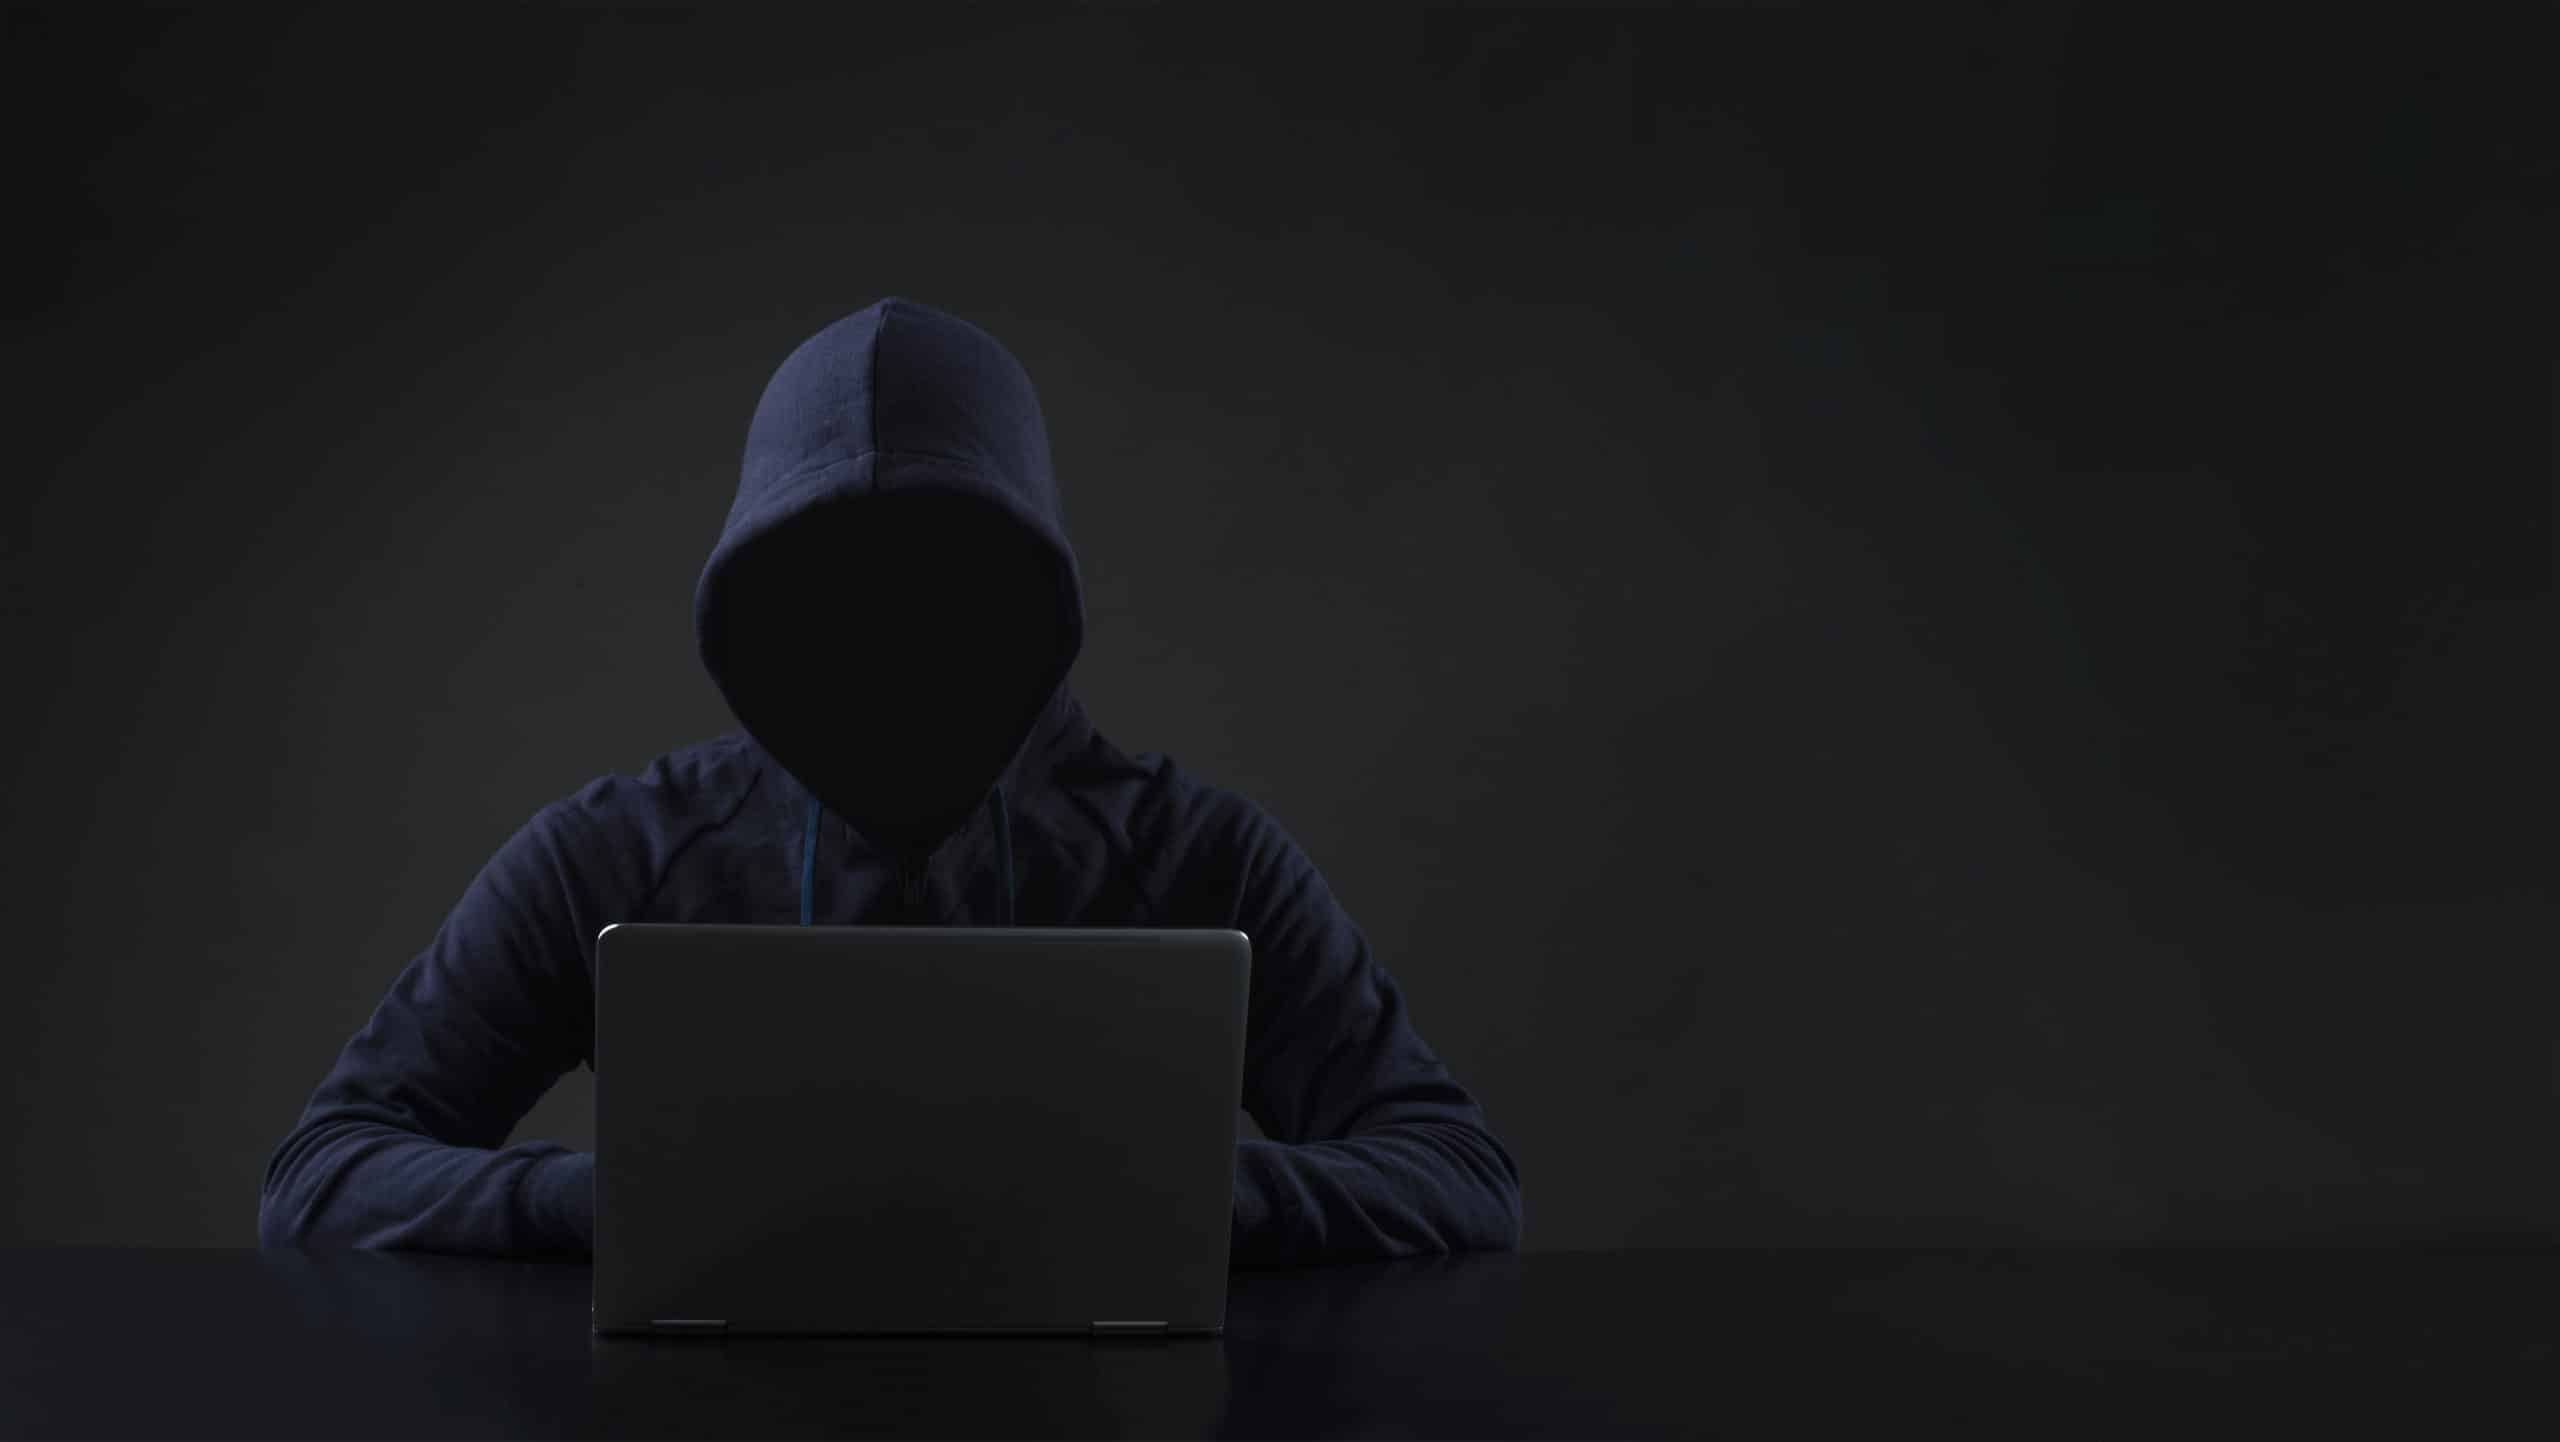 Hacker in front of computer